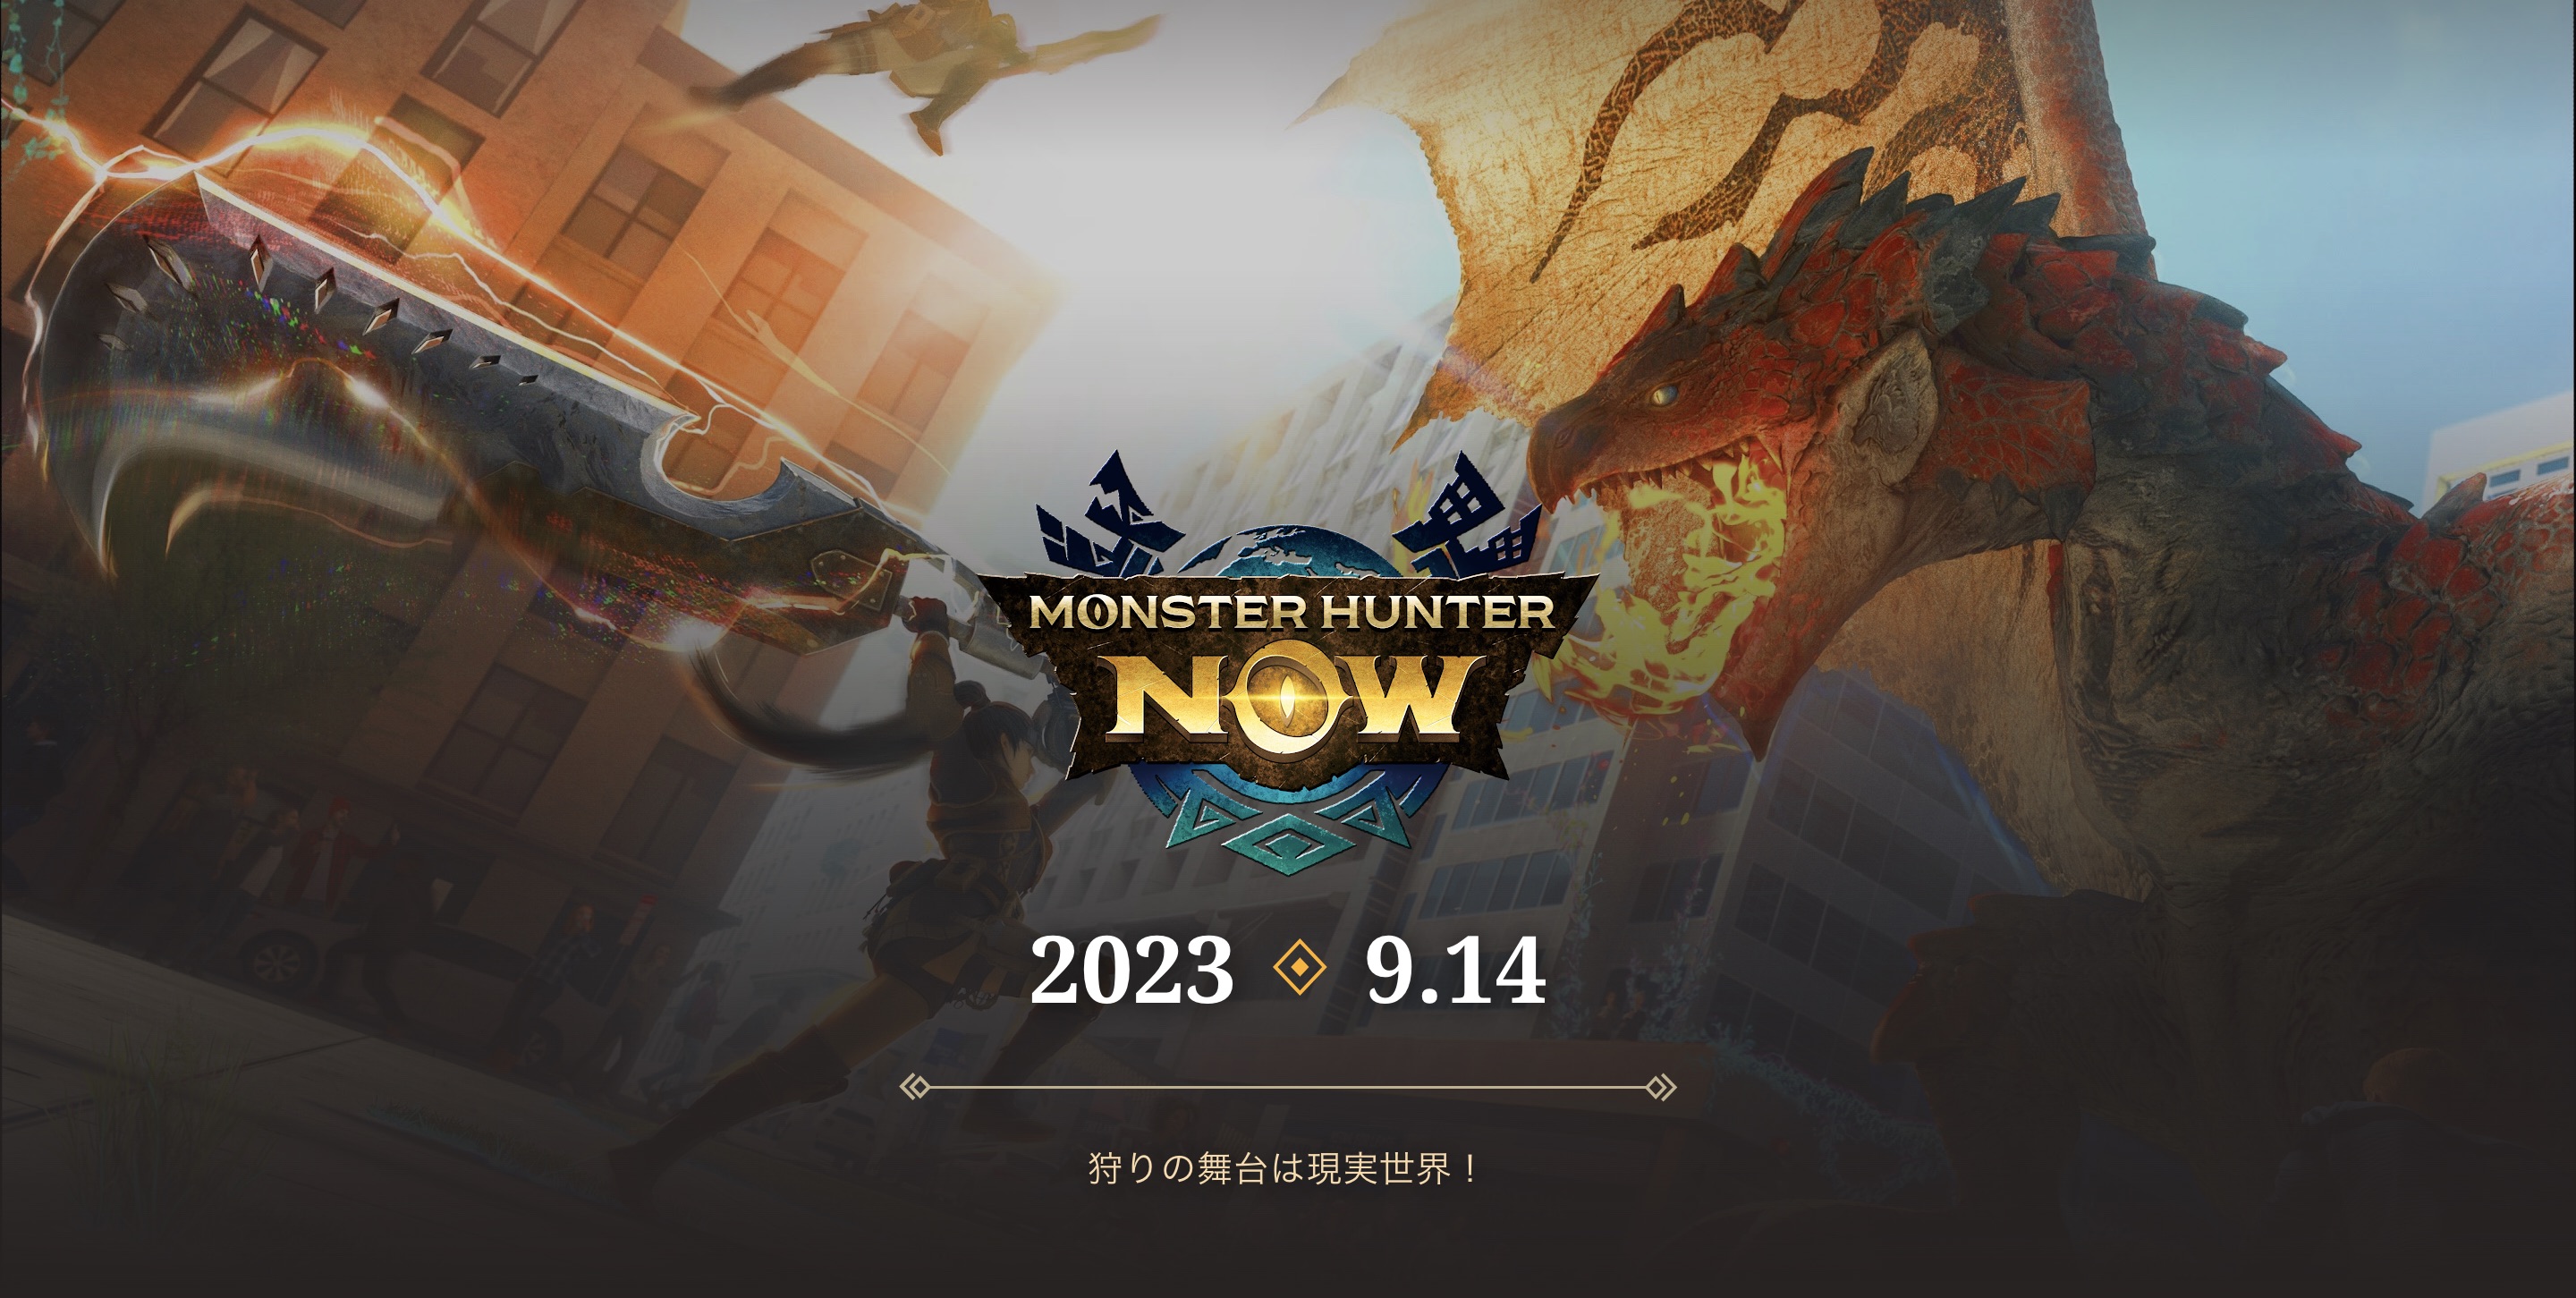 現実世界でモンスターを狩猟する“モンハンNow”「Monster Hunter Now」が9月14日リリース決定─事前登録者100万人を突破